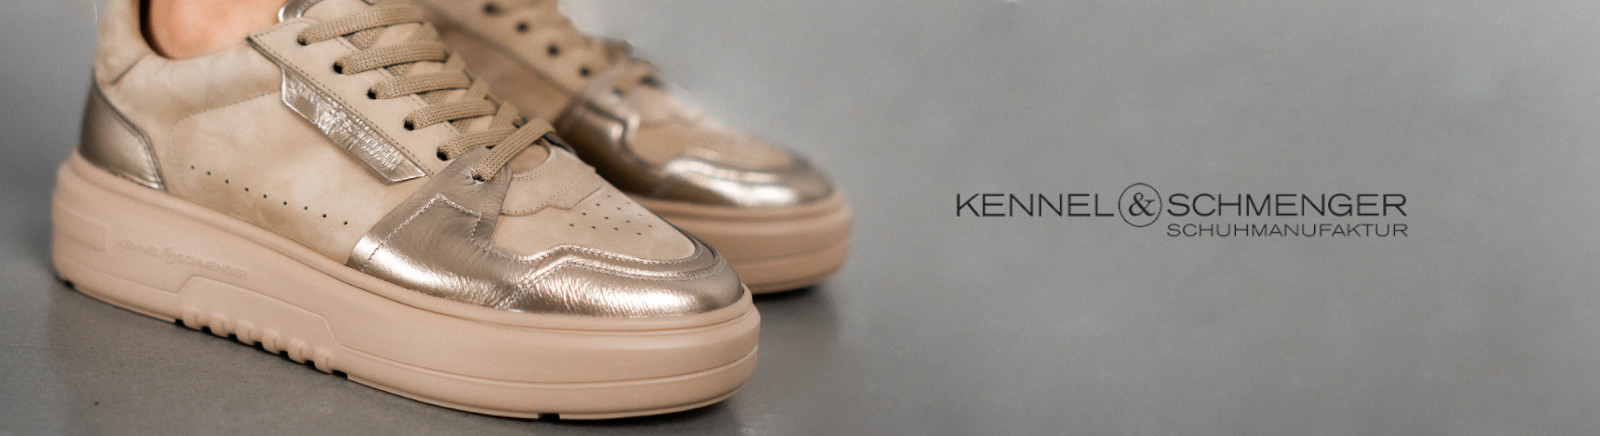 Kennel & Schmenger Schuhe kaufen im GISY Online Shop